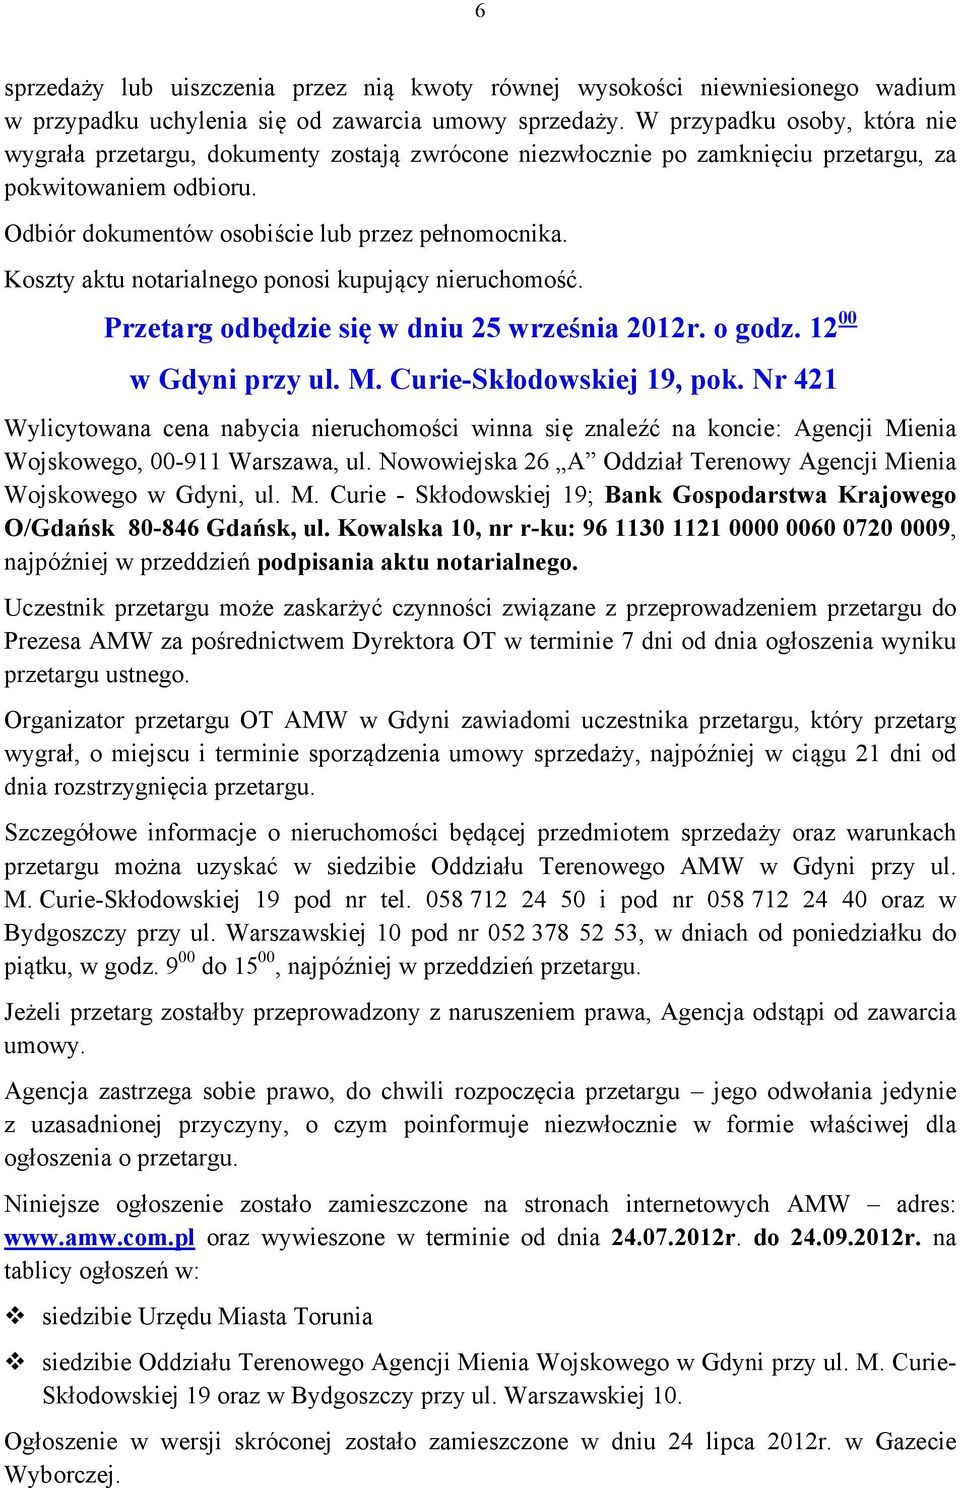 Koszty aktu notarialnego ponosi kupujący nieruchomość. Przetarg odbędzie się w dniu 25 września 2012r. o godz. 12 00 w Gdyni przy ul. M. Curie-Skłodowskiej 19, pok.